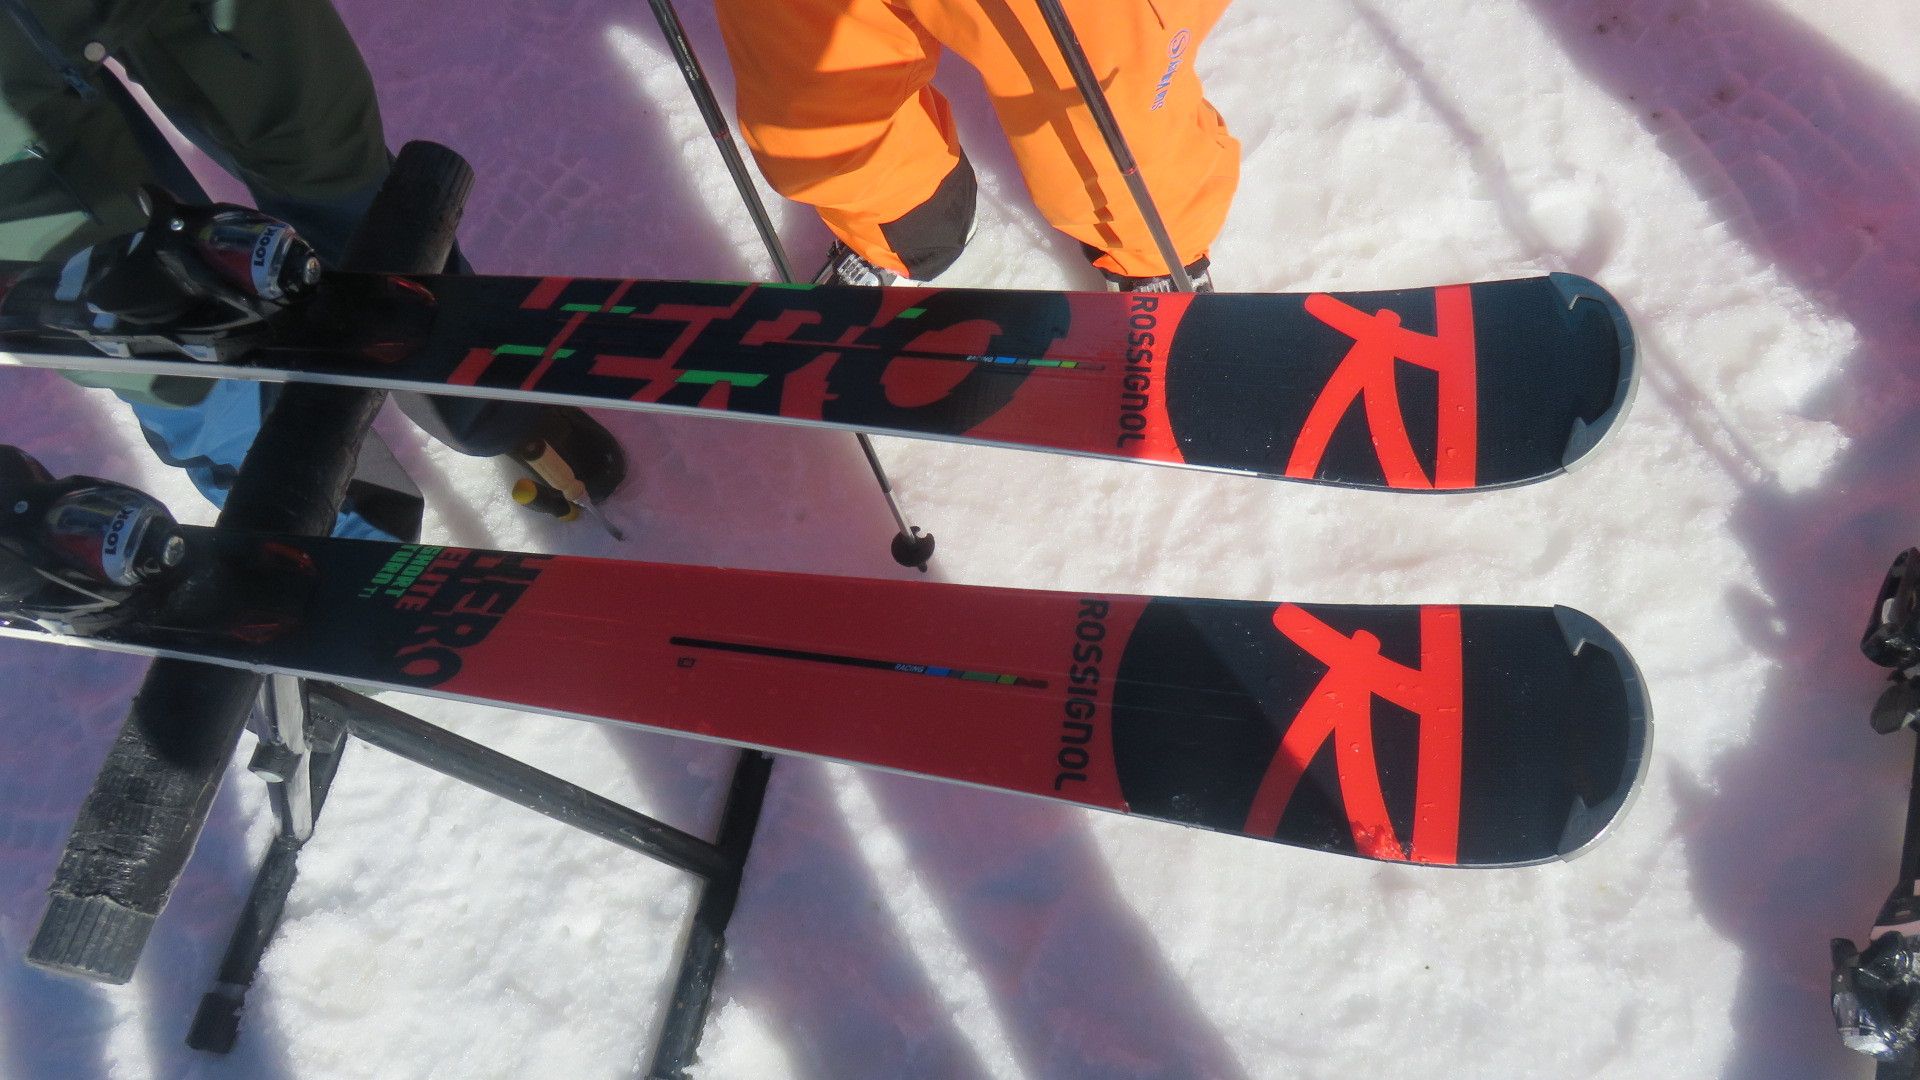 Fuentes de Invierno también existe [Ski Test Megasport] 